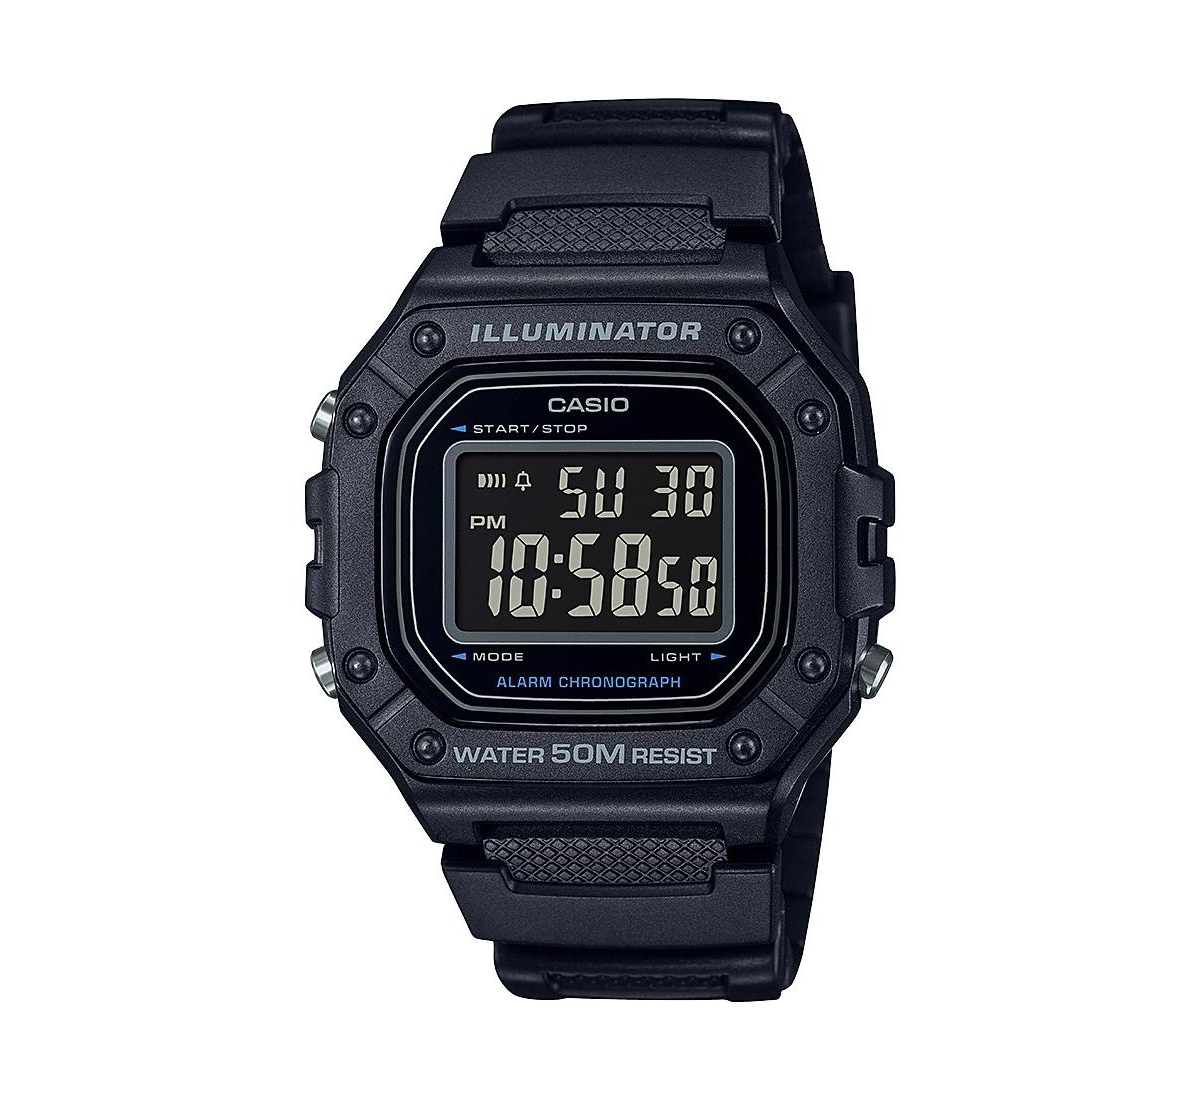 Men's Digital Black Resin Watch 43.2mm, W218H-1BV - Black